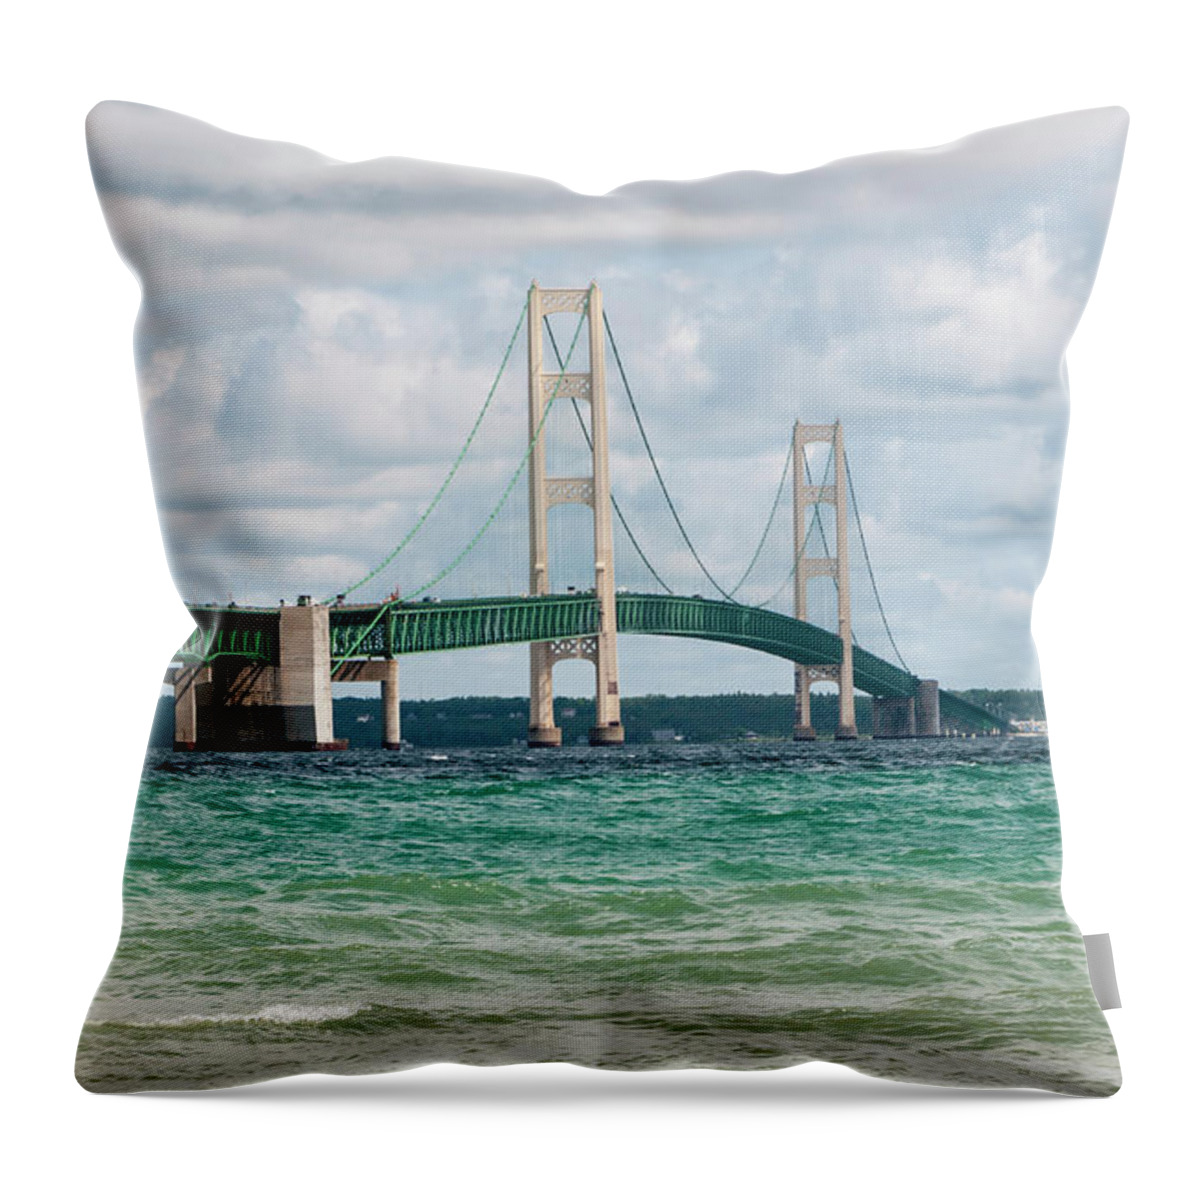 Mackinac Bridge Throw Pillow featuring the photograph Mackinac Bridge by Phyllis Taylor